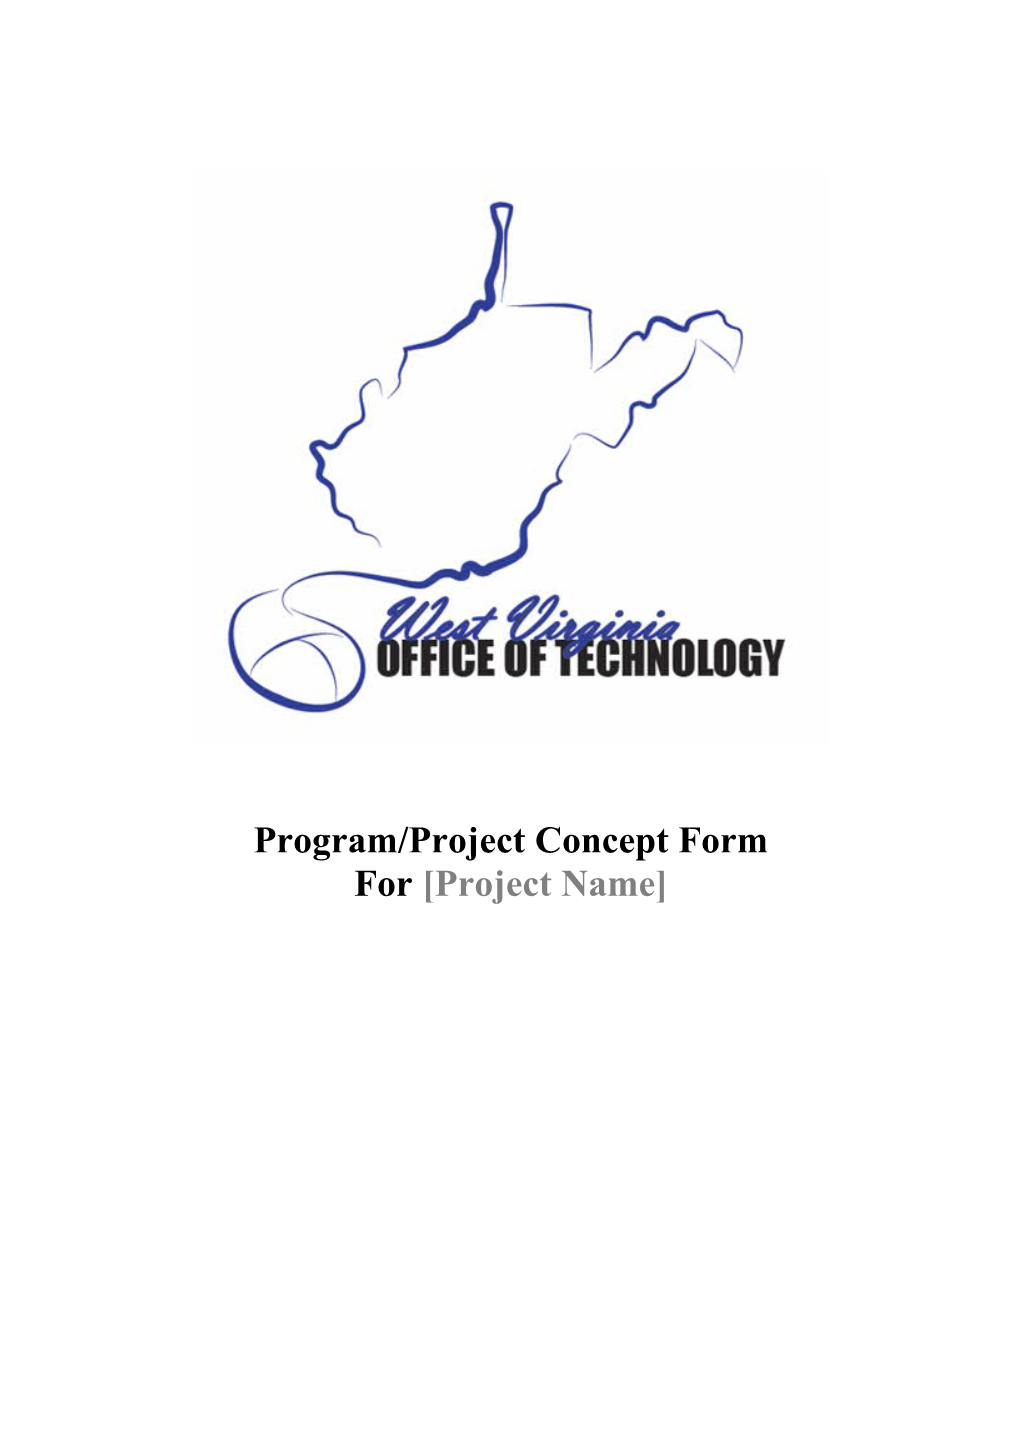 Program/Project Concept Form